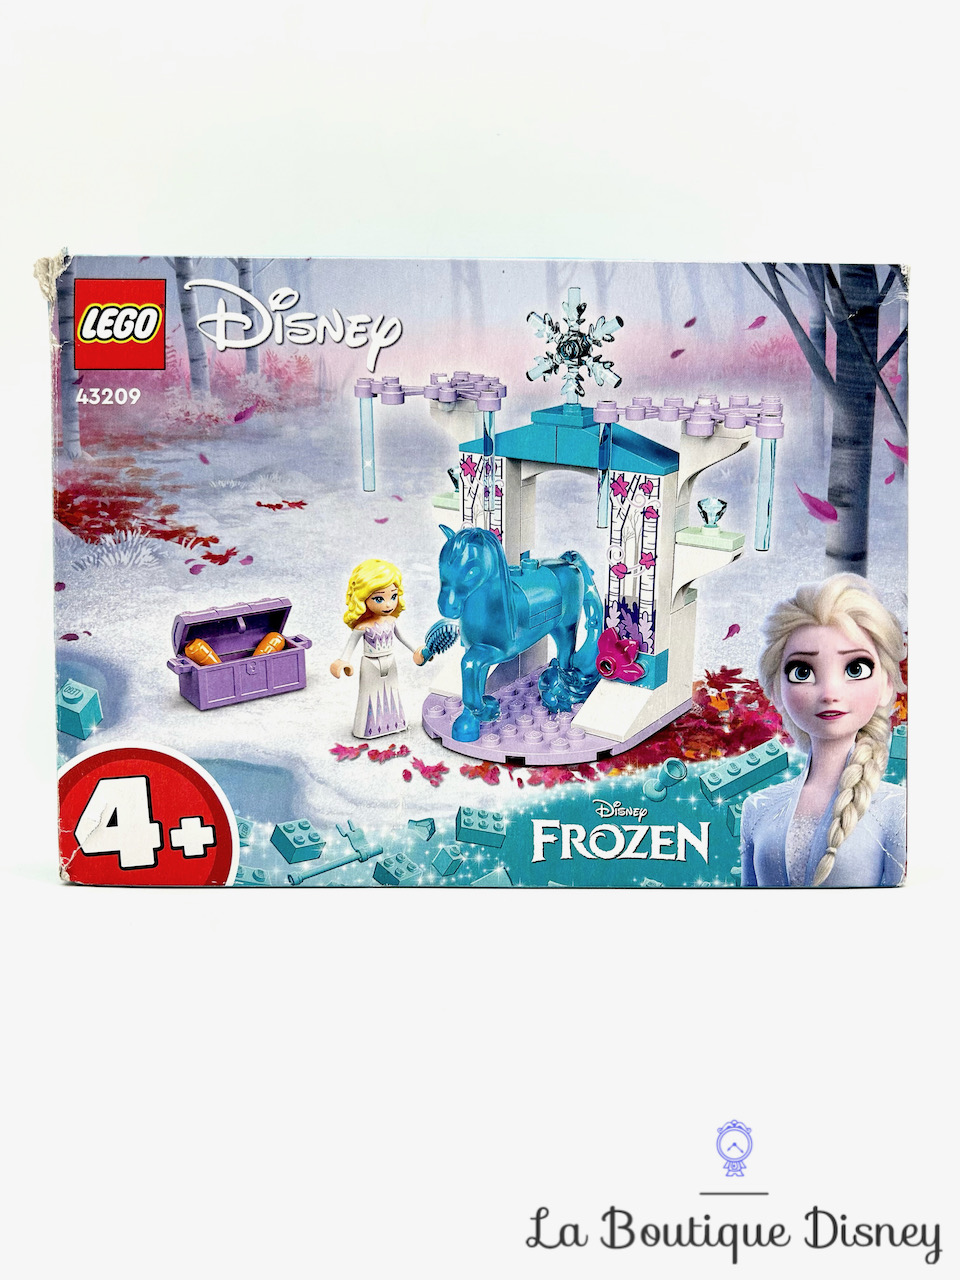 jouet-lego-43209-elsa-écurie-glace-nokk-la-reine-des-neiges-disney-frozen-2